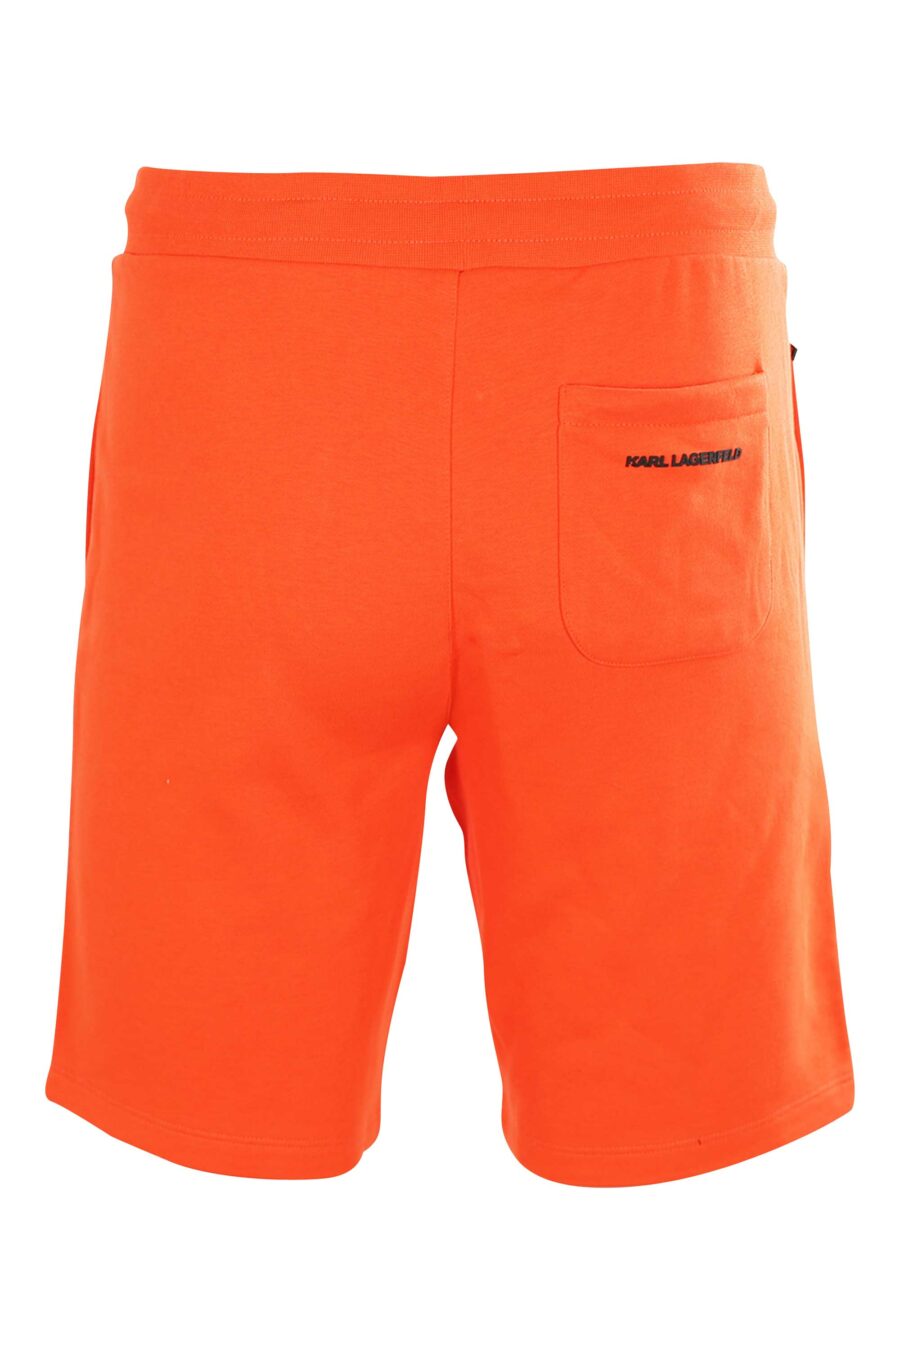 Pantalón de chándal corto naranja con logo de goma - 4062226266710 3